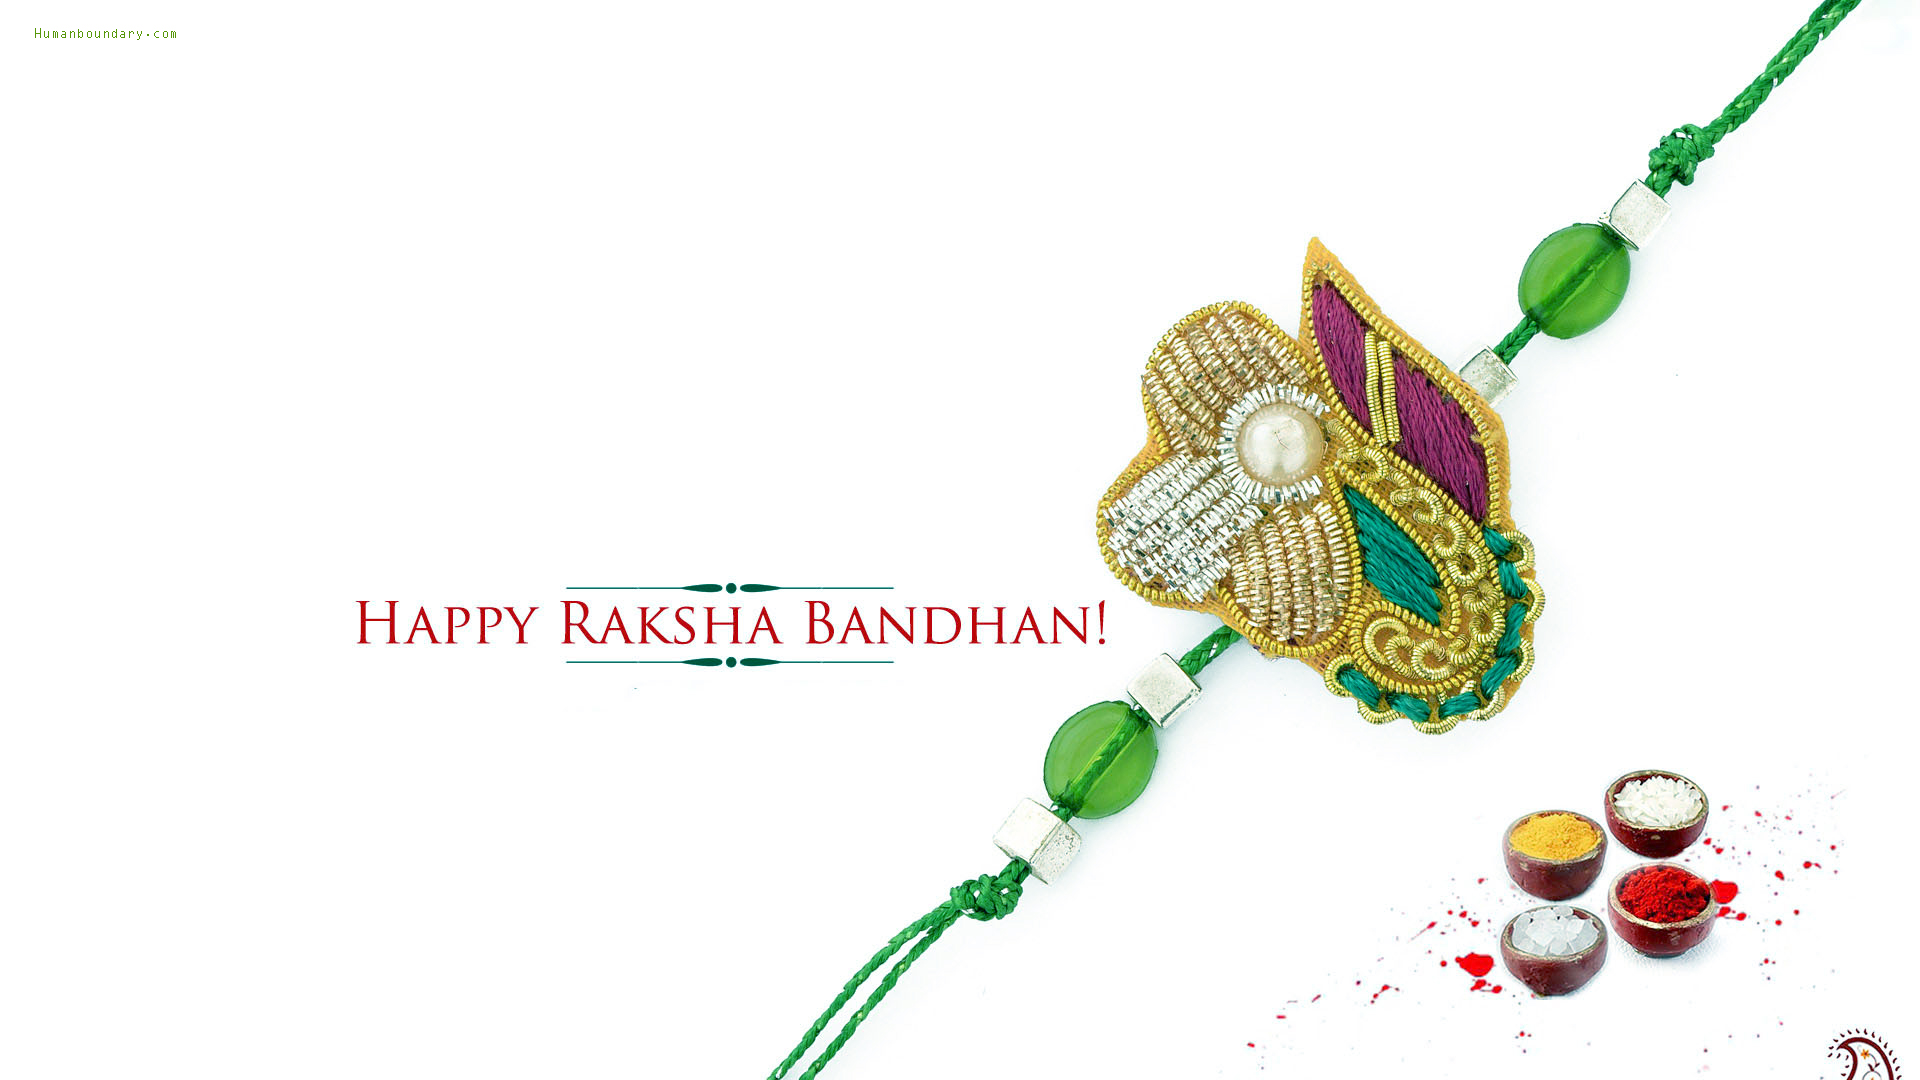 Raksha Bandhan Rakhi Images, Pictures - Happy Raksha Bandhan Images Hd -  1920x1080 Wallpaper 